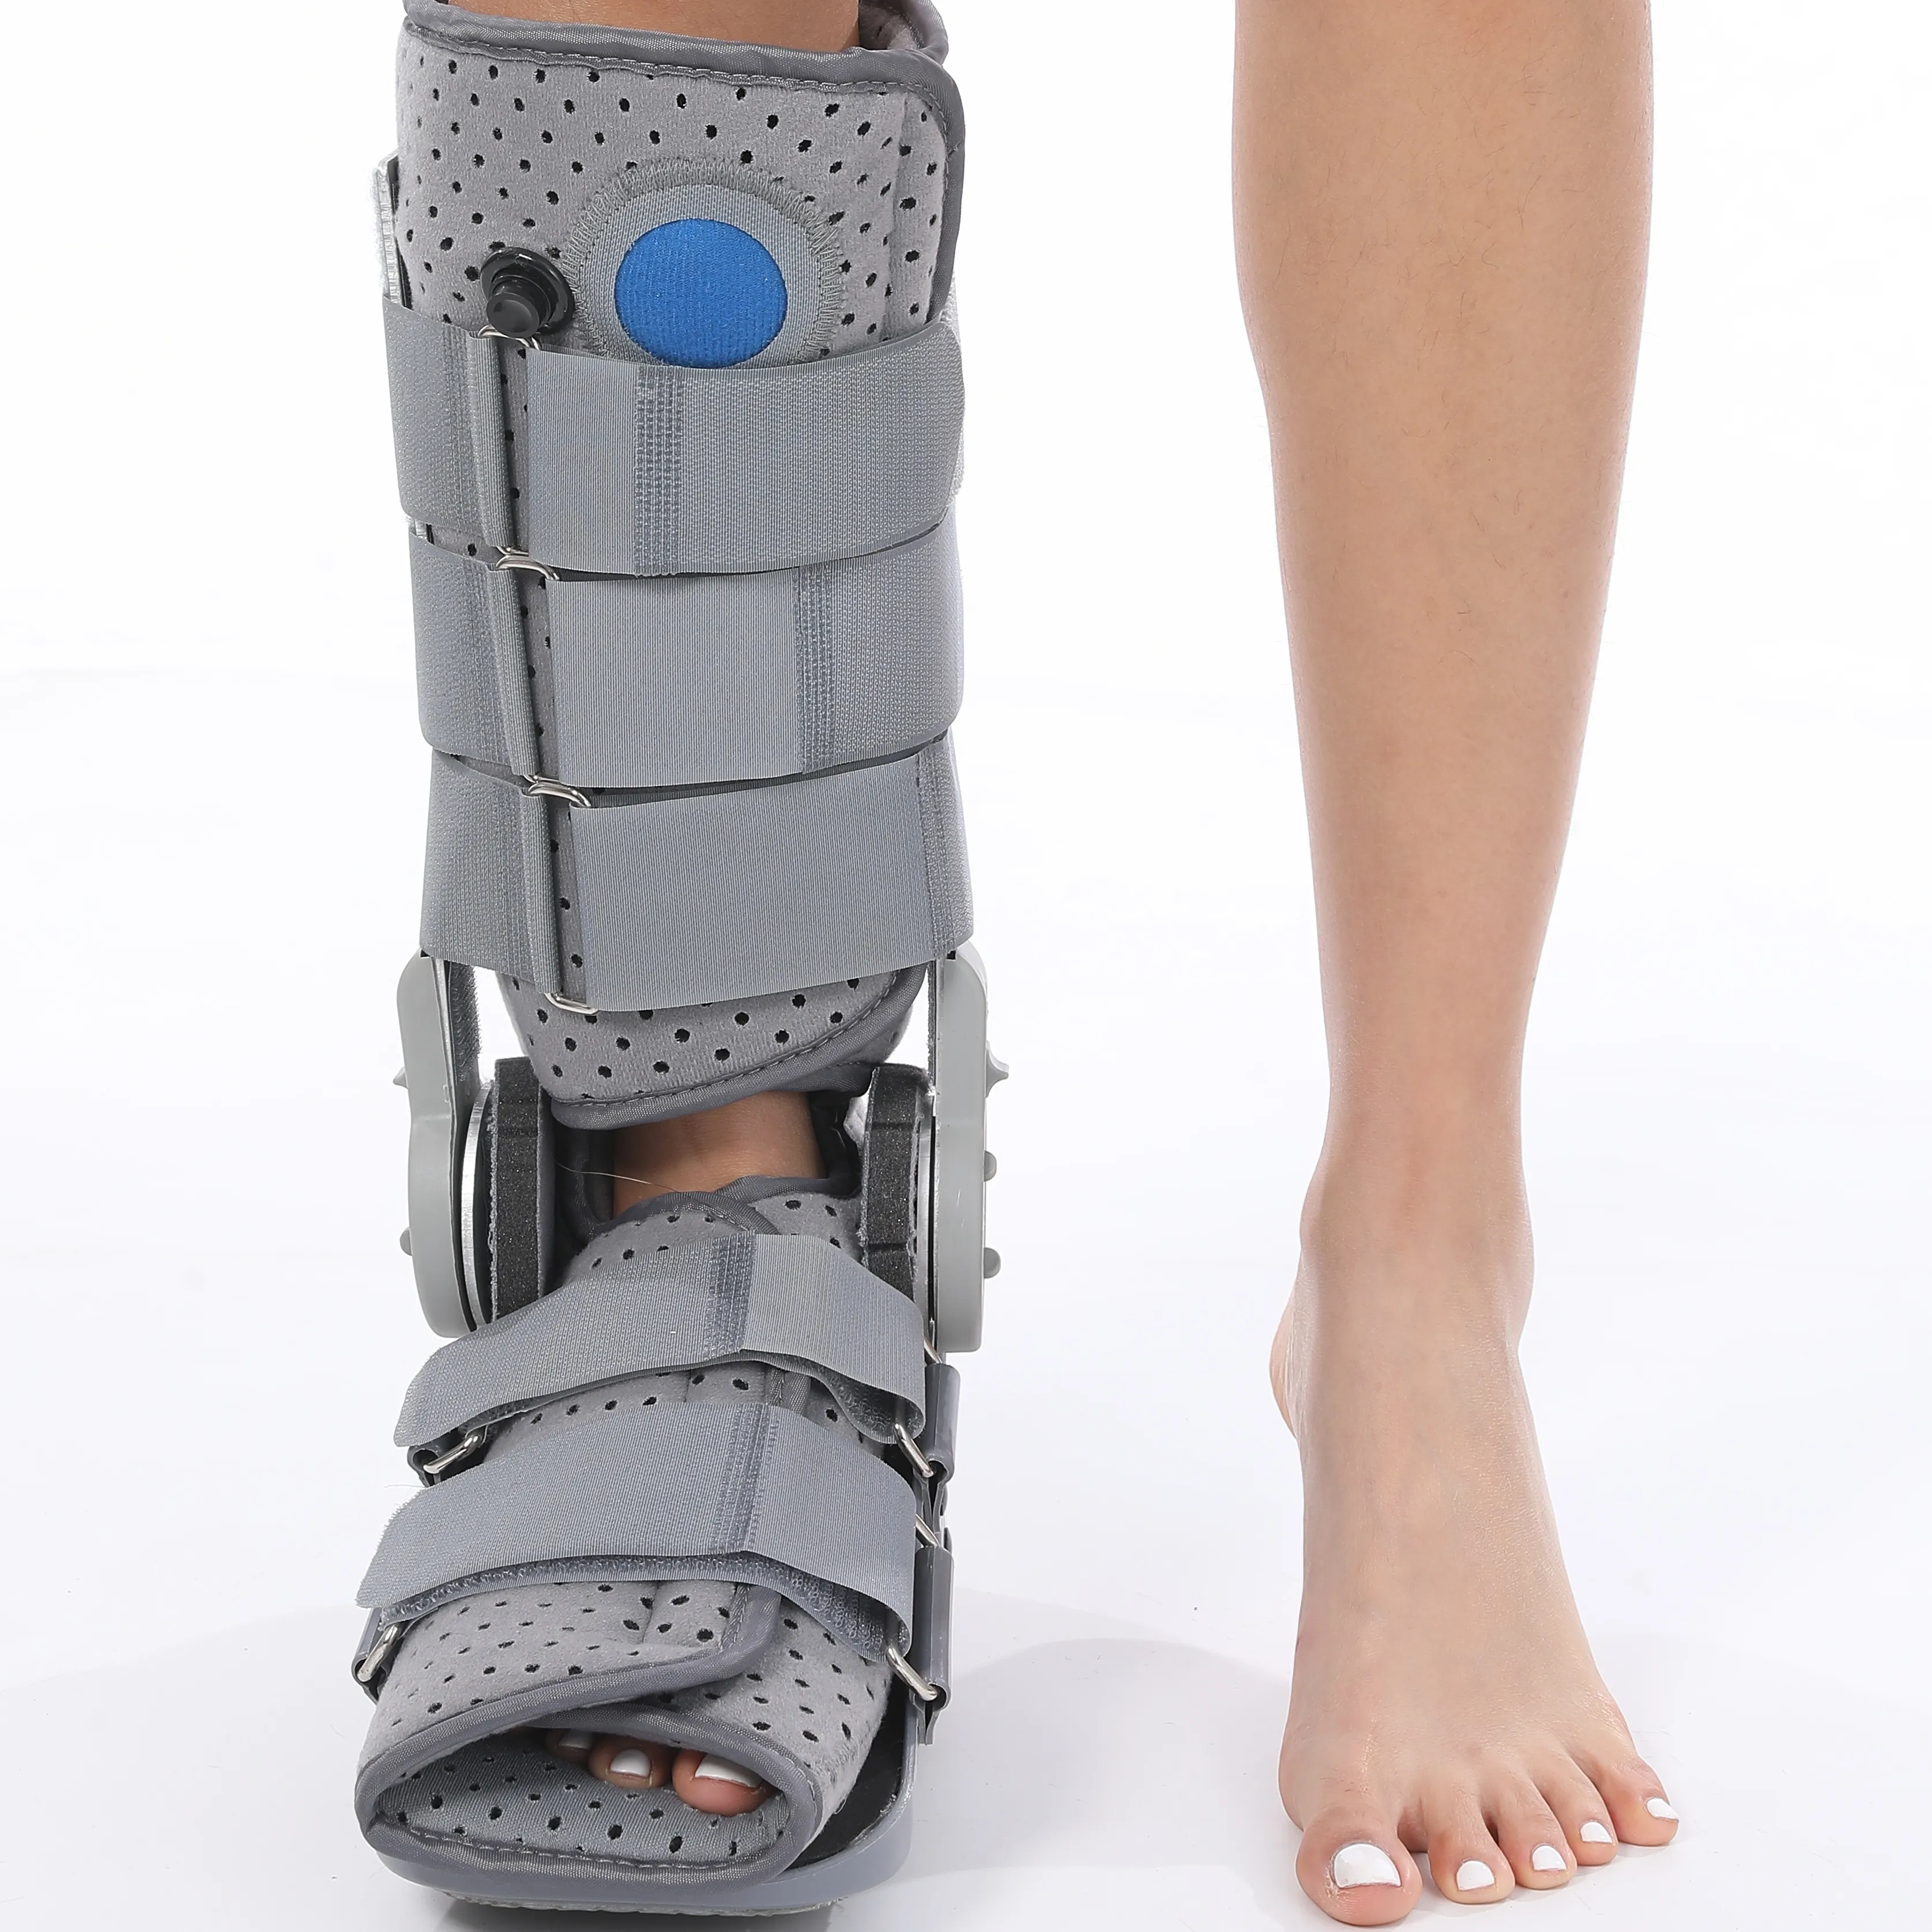 Abrazadera ortopédica médica ajustable, botas para caminar para tobillos de rotura, gran oferta